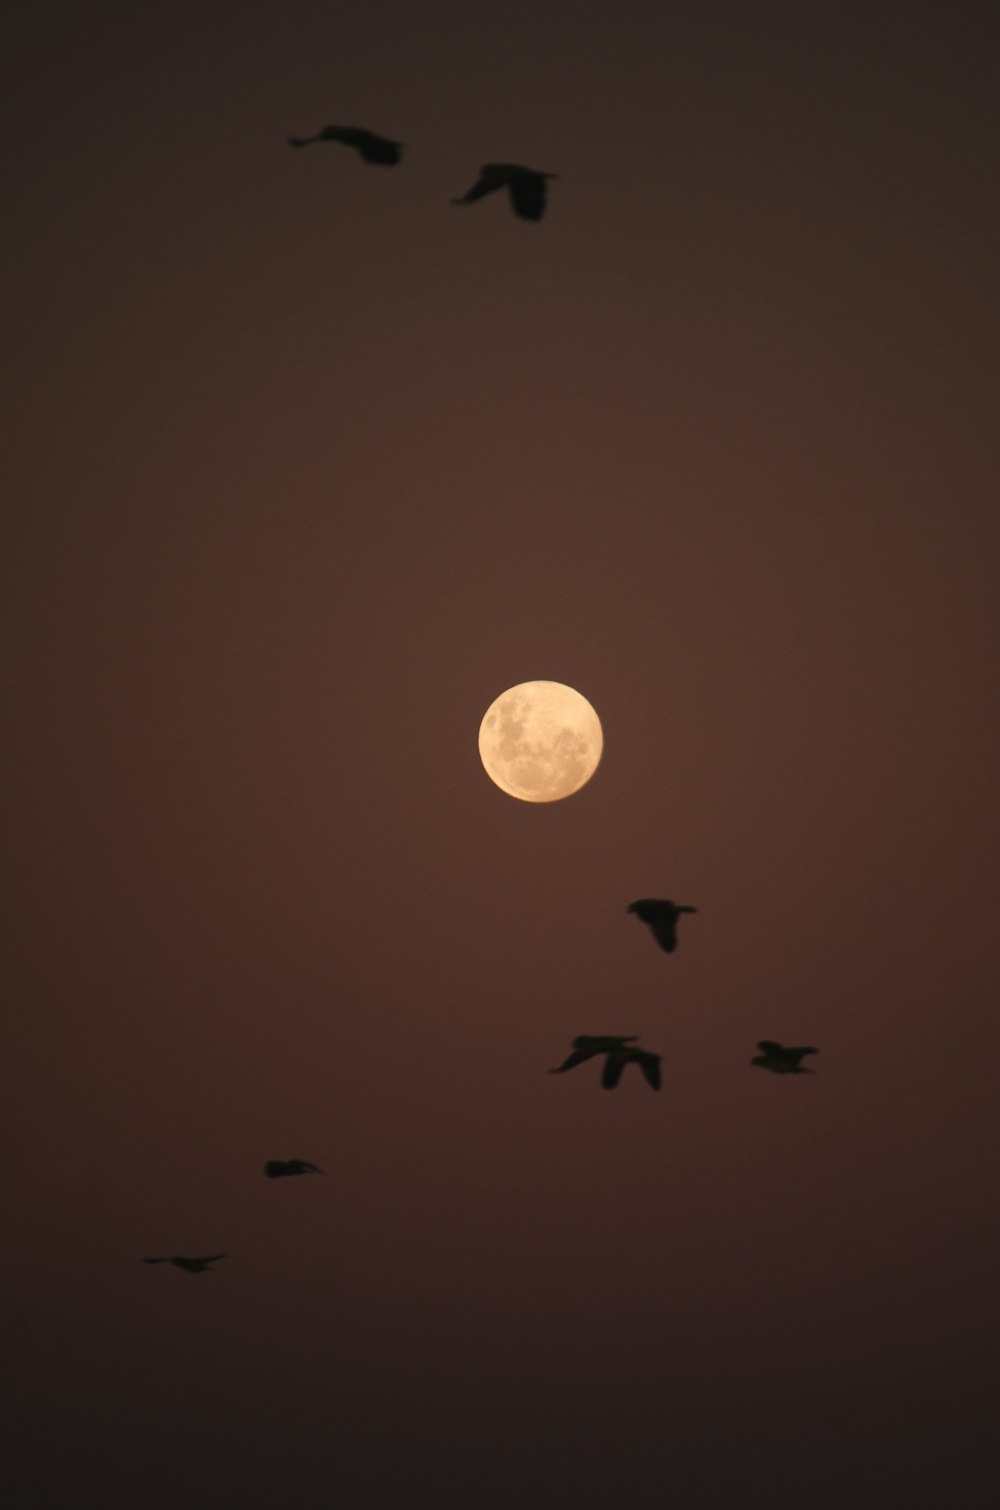 birds flying under full moon